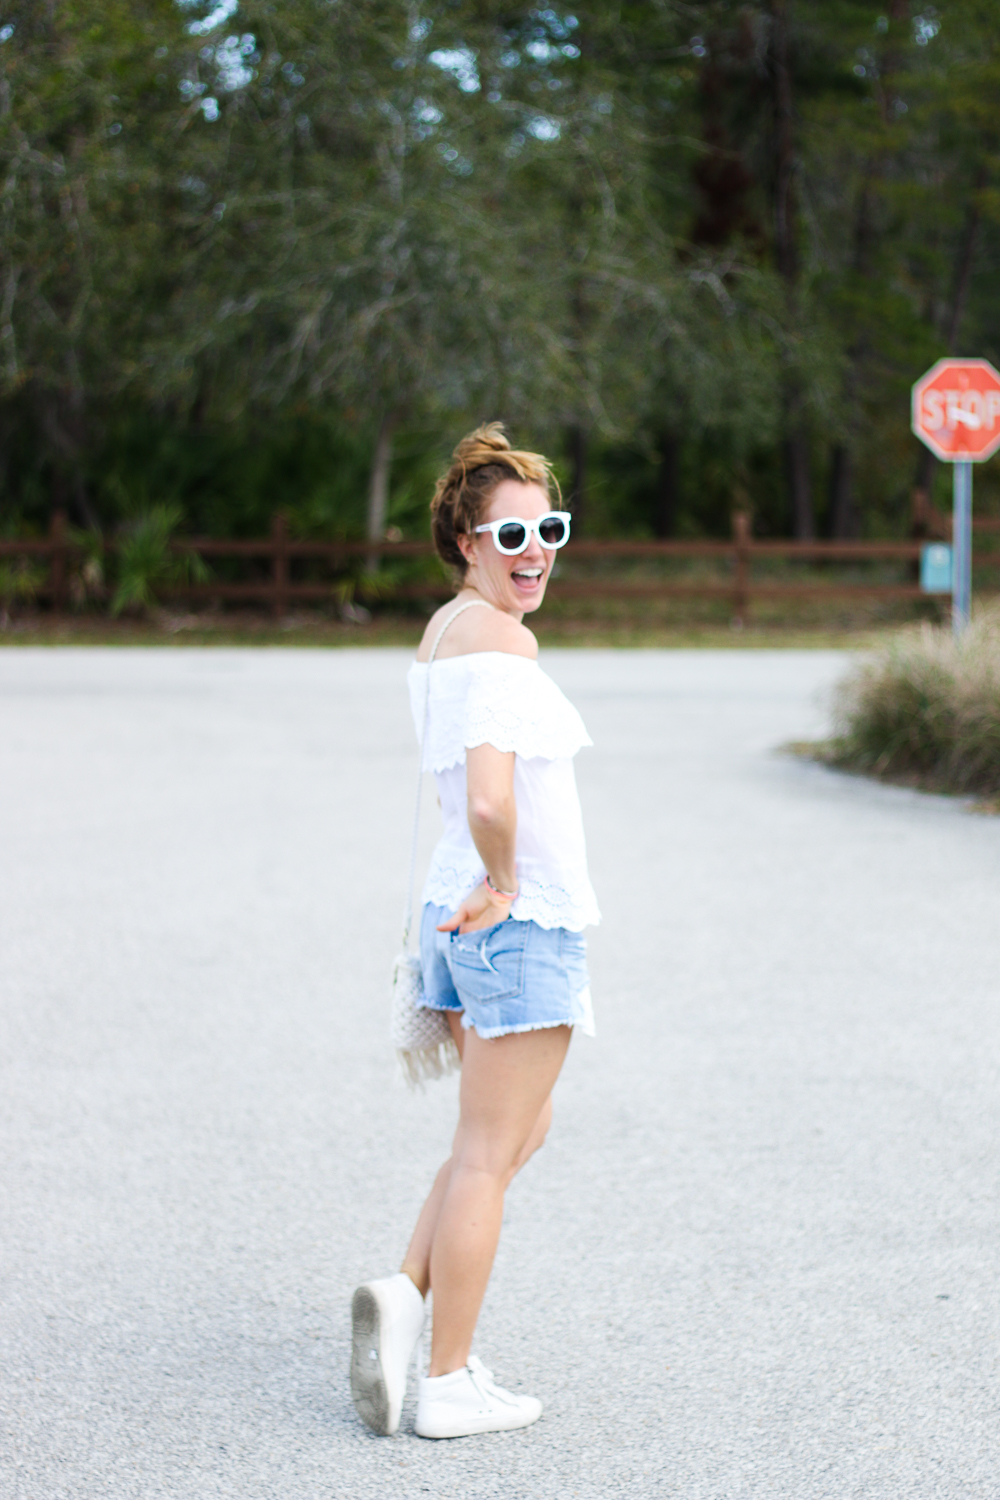 She Wears Short Shorts Sunshine Style Florida Fashion And Lifestyle Blog 